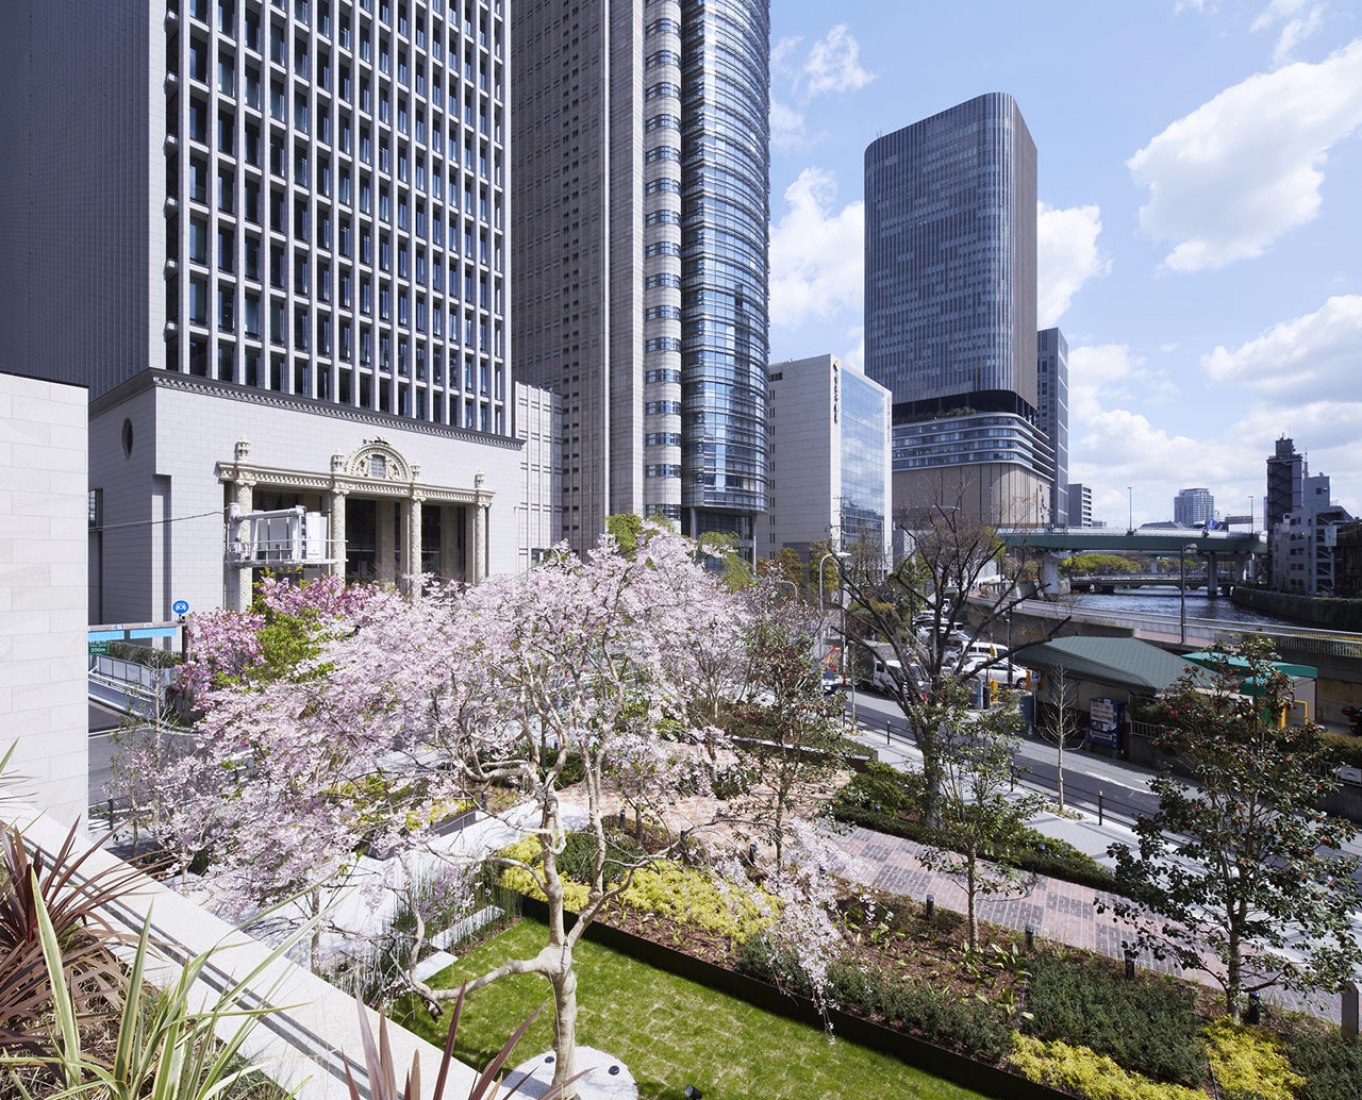 Jardín, visto desde la cubierta del segundo piso peatonal. Mitsui Garden Hotel Osaka Premier por STGK, Nakanoshima, Osaka, Japón. Fotografía @ Kouji Okumura.